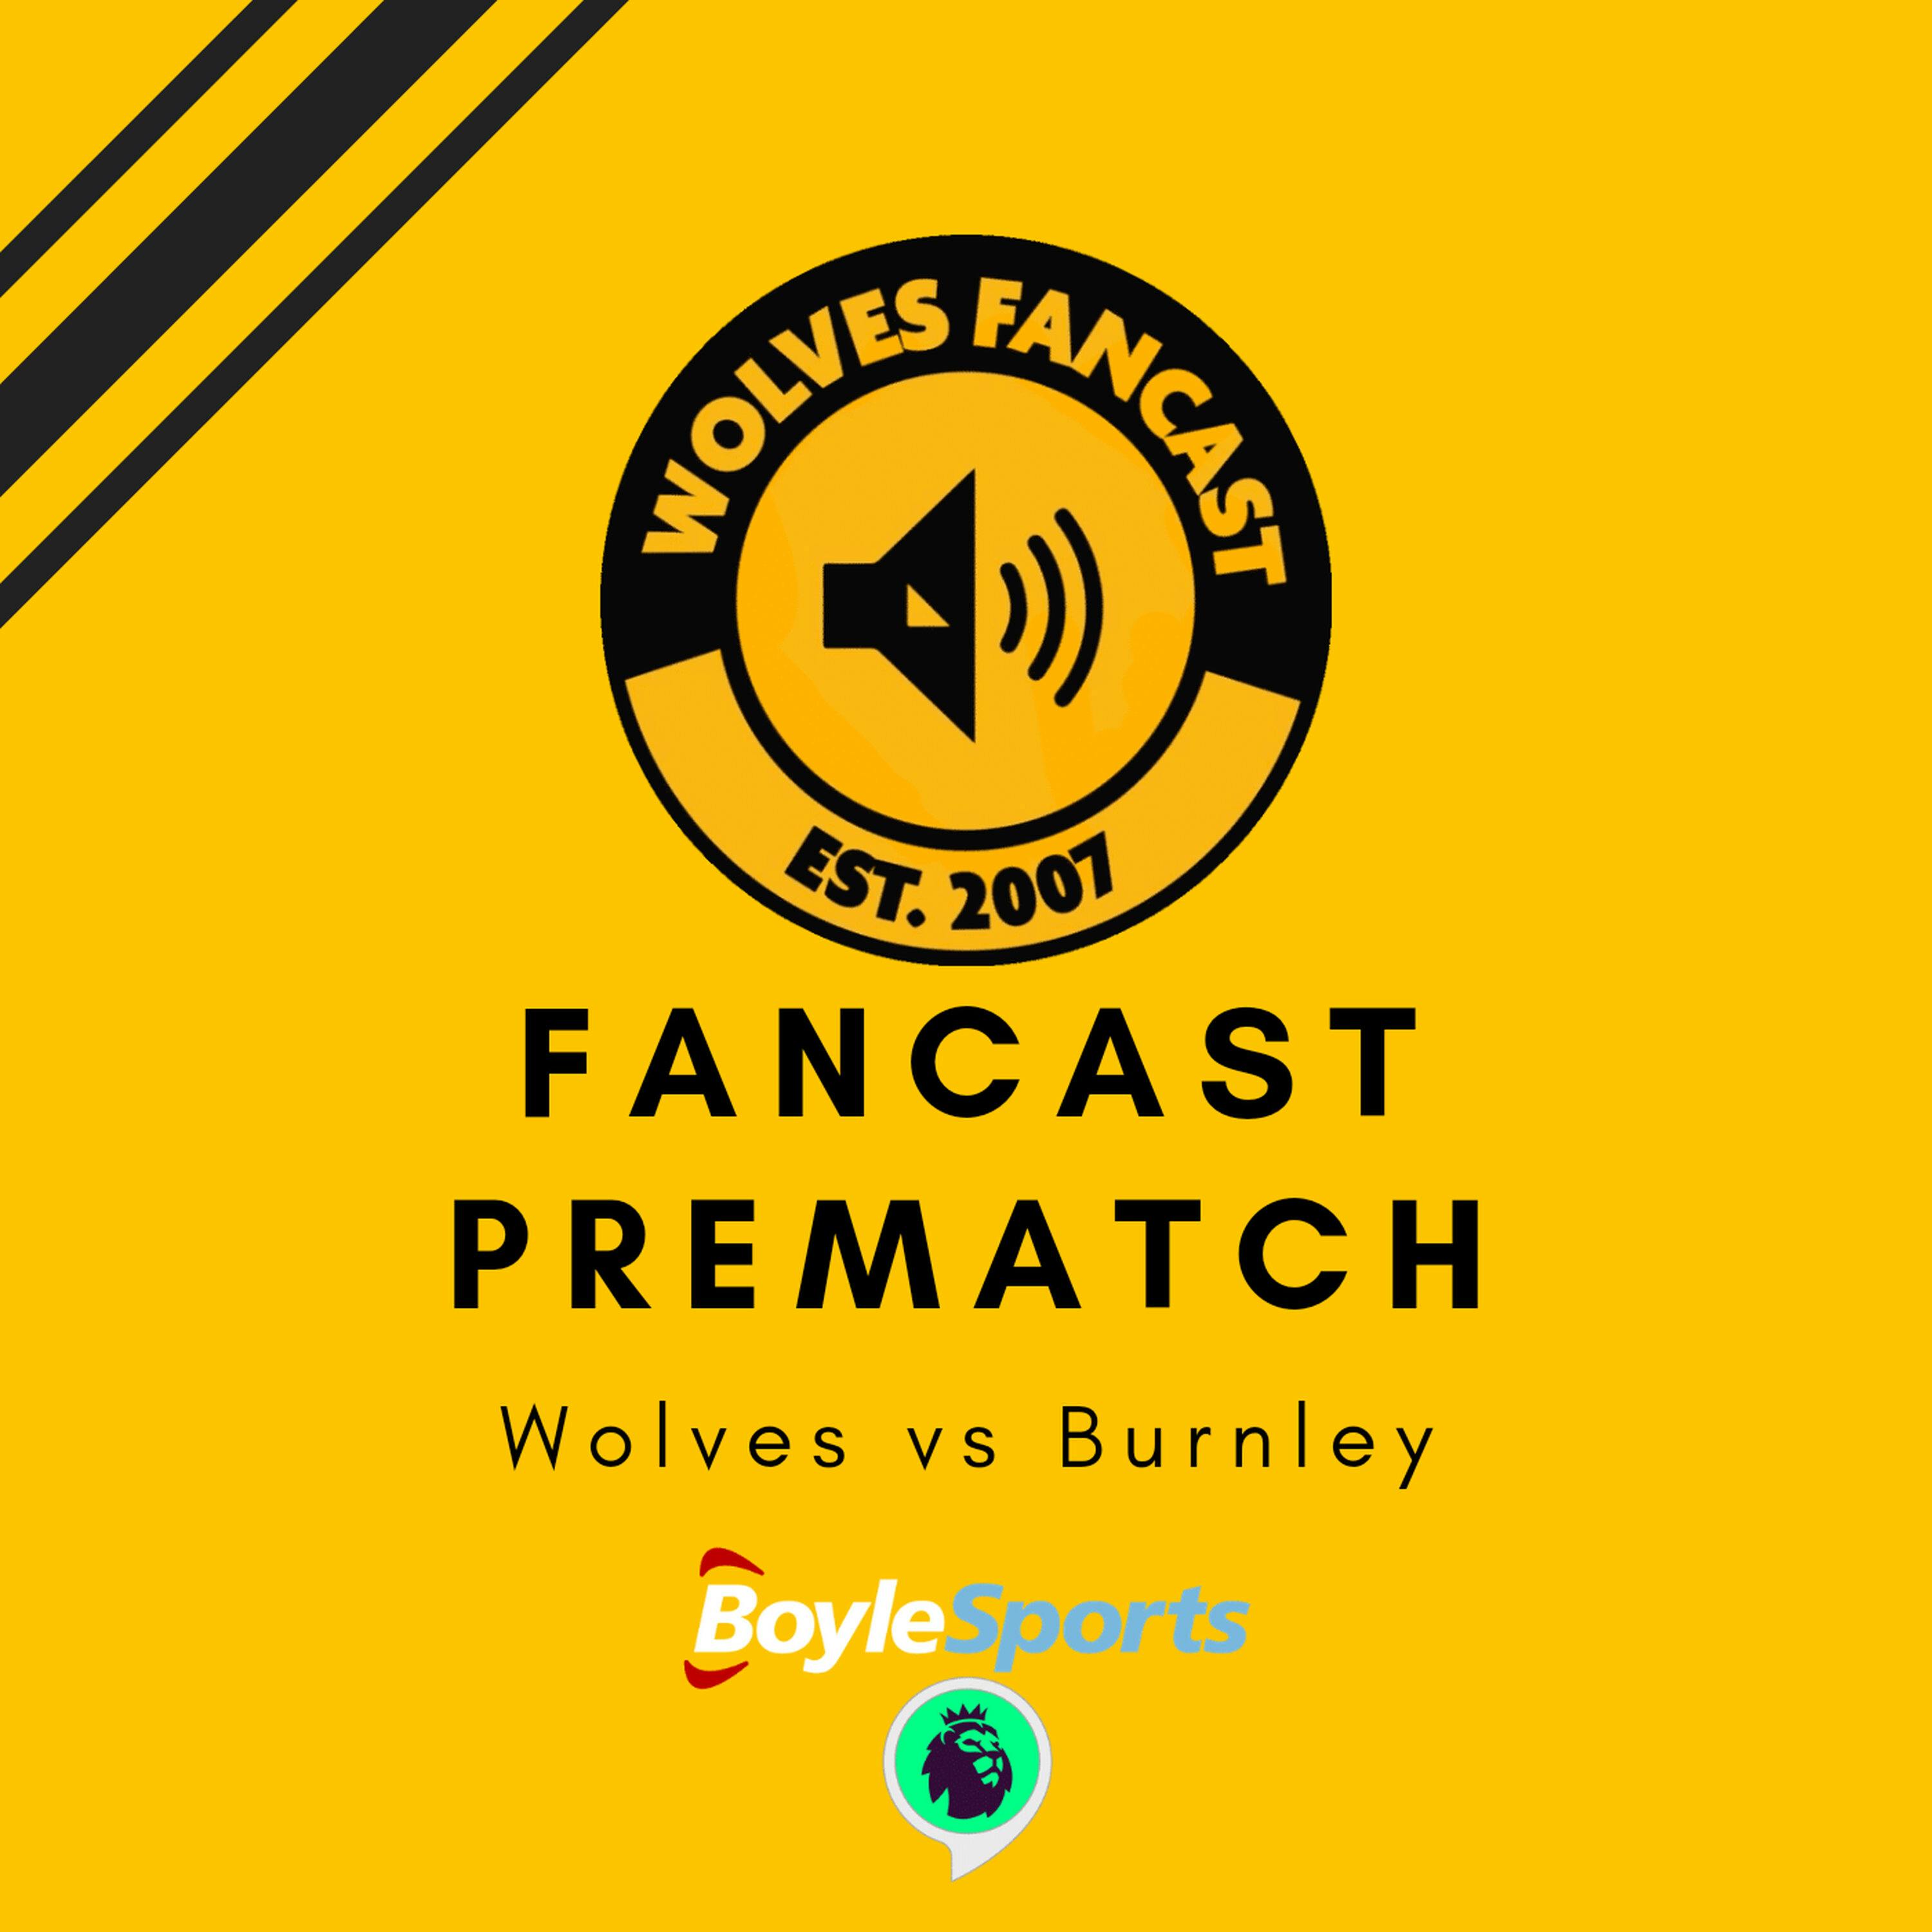 Wolves Vs Burnley - Fancast Prematch